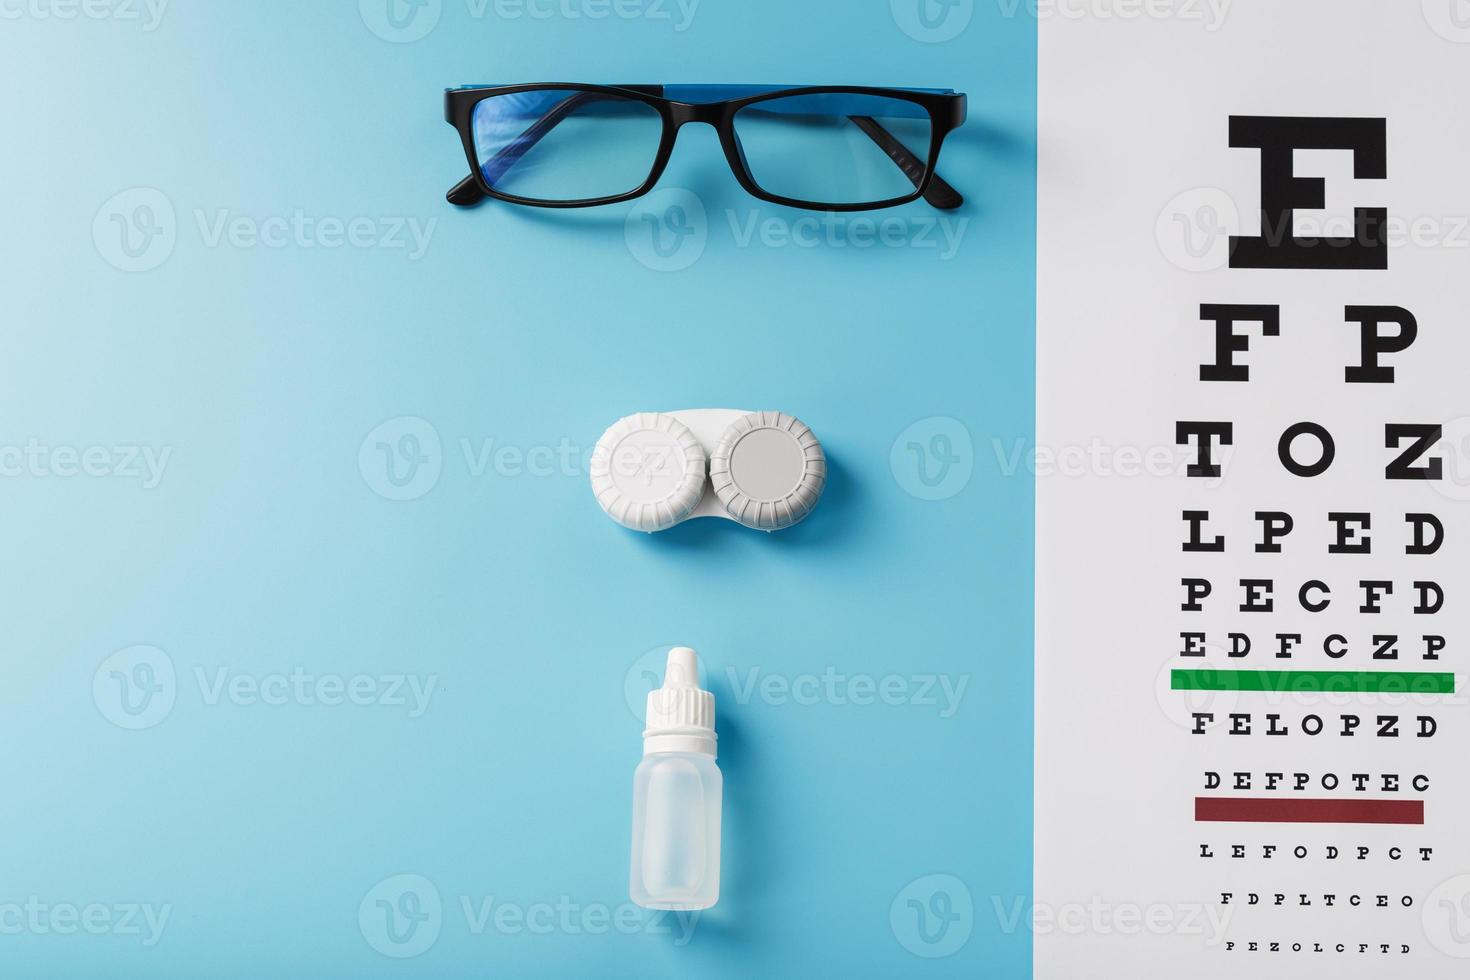 oftalmisk Tillbehör glasögon och linser med ett öga testa Diagram för syn korrektion på en blå bakgrund foto